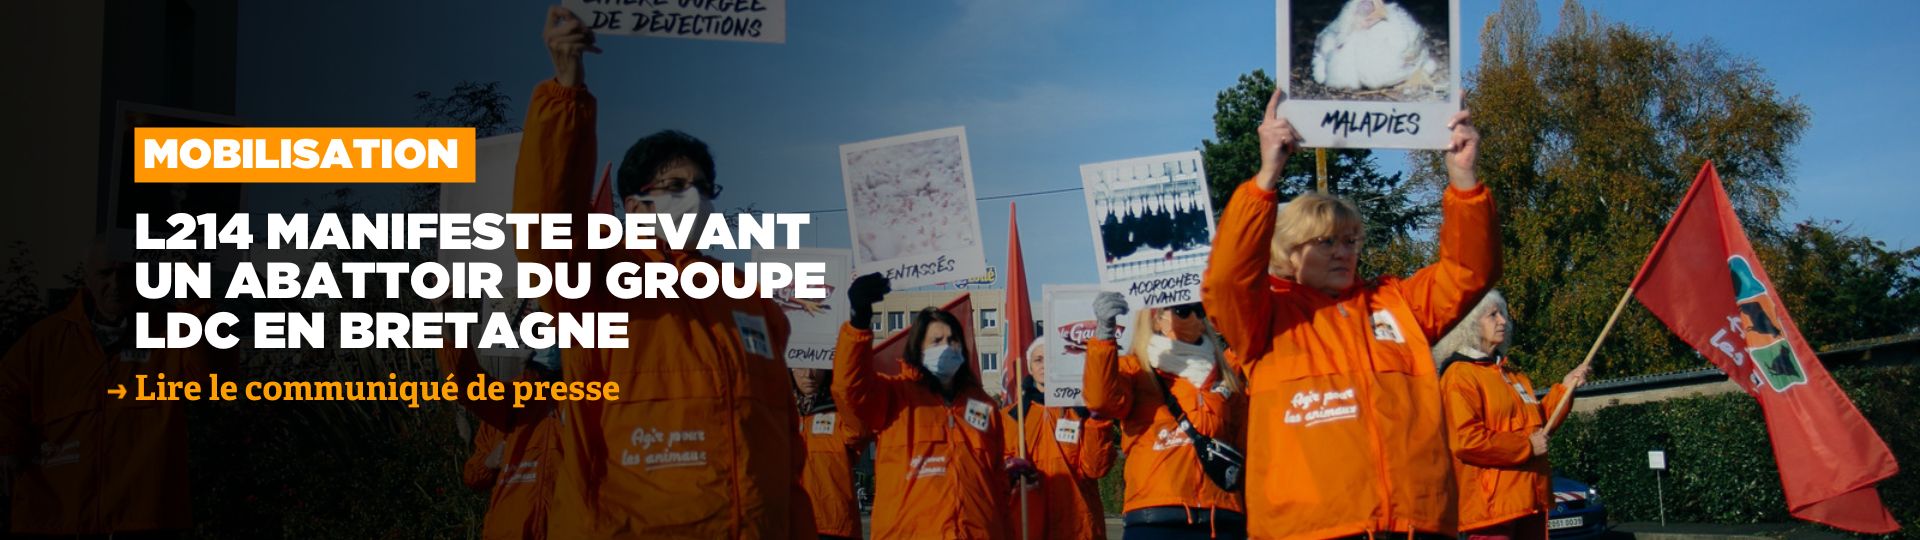 LDC manifeste devant l'abattoir LDC de Saint-Jean-Brévelay